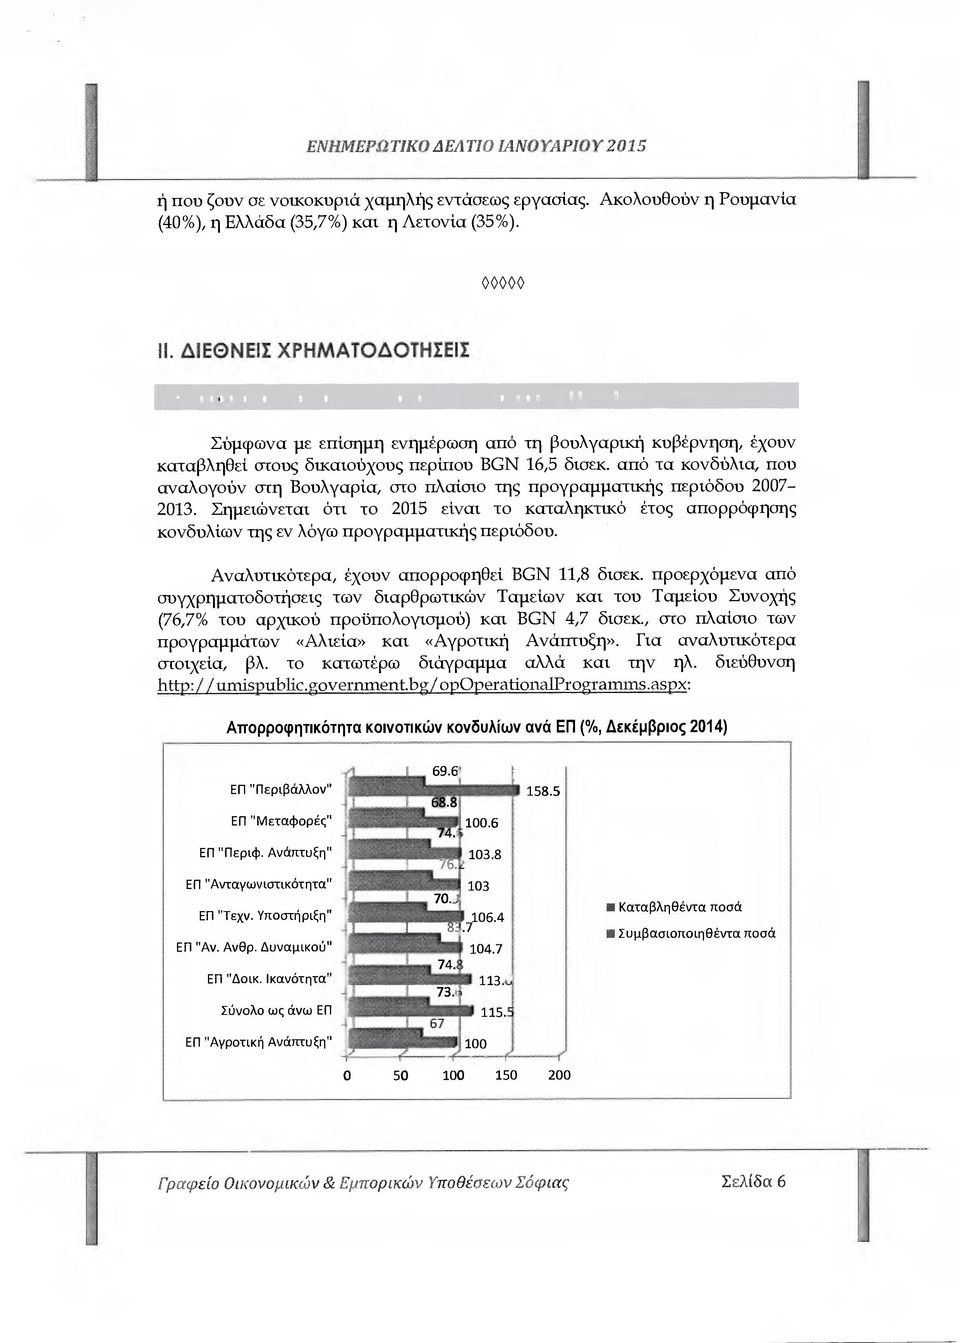 από τα κονδύλια, που αναλογούν στη Βουλγαρία, στο πλαίσιο της προγραµµατικής περιόδου 2007-2013.